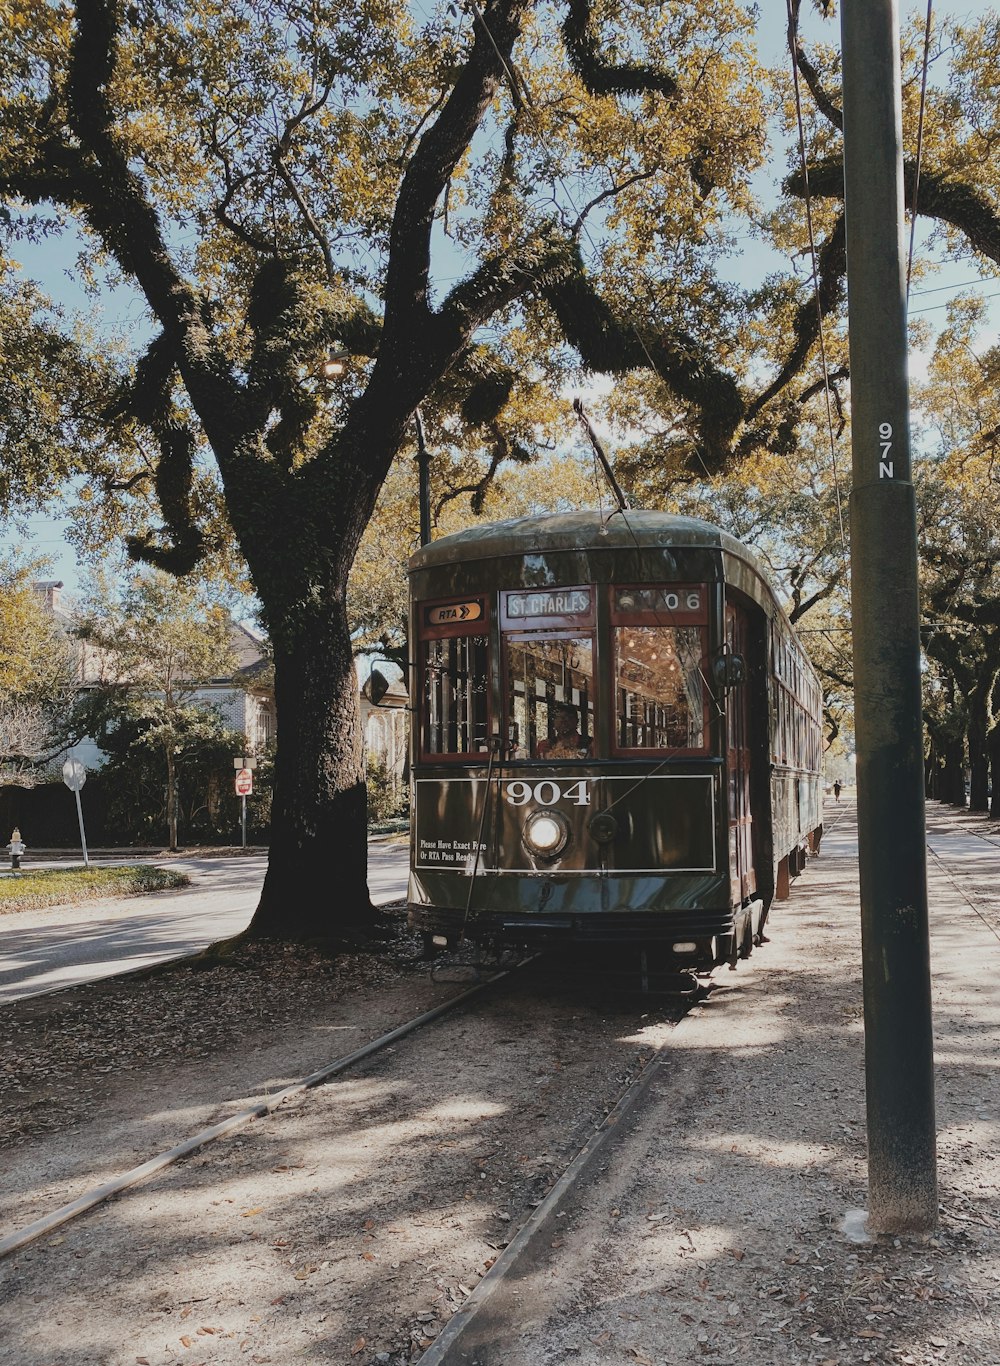 Cruce de tren al lado de un árbol